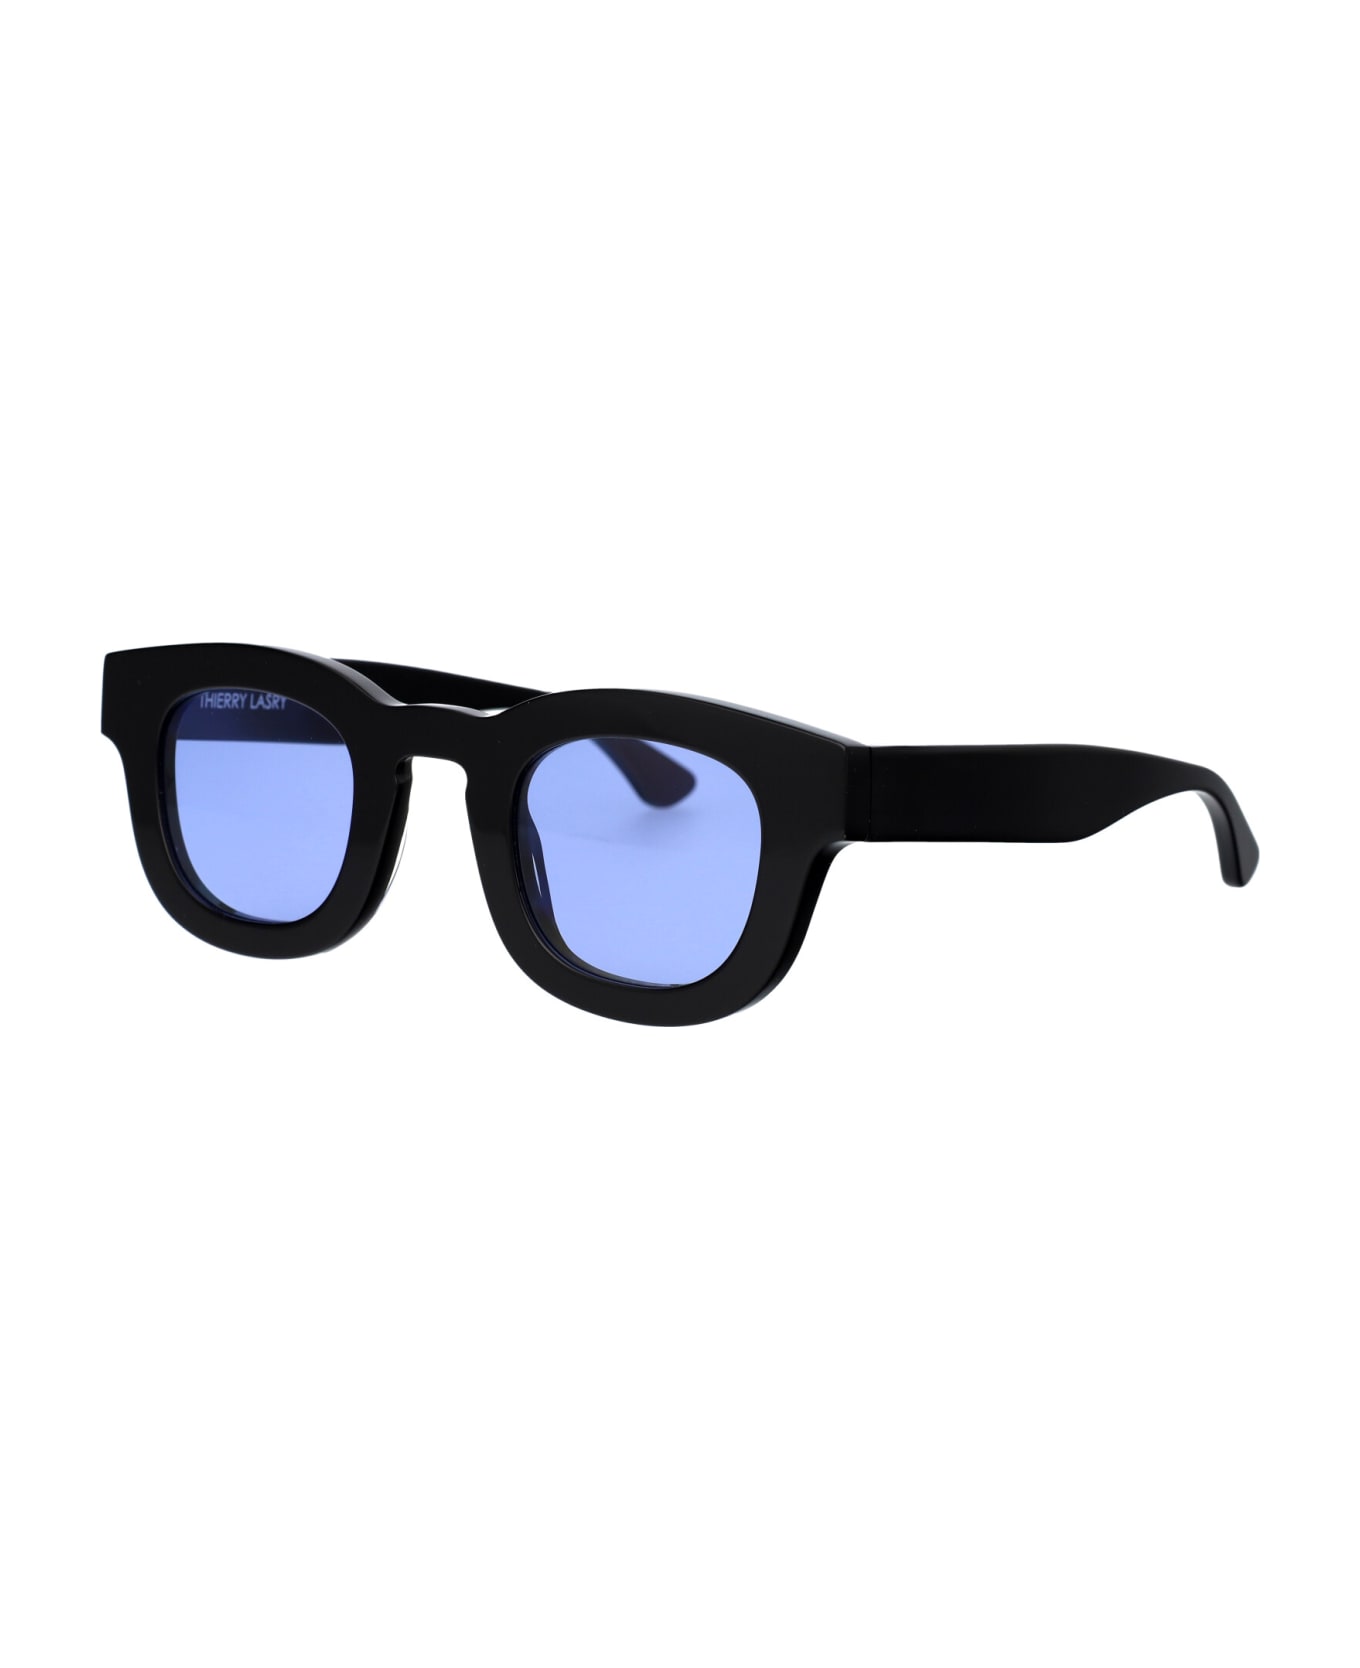 Thierry Lasry Darksidy Sunglasses - 101 LIGHT BLUE